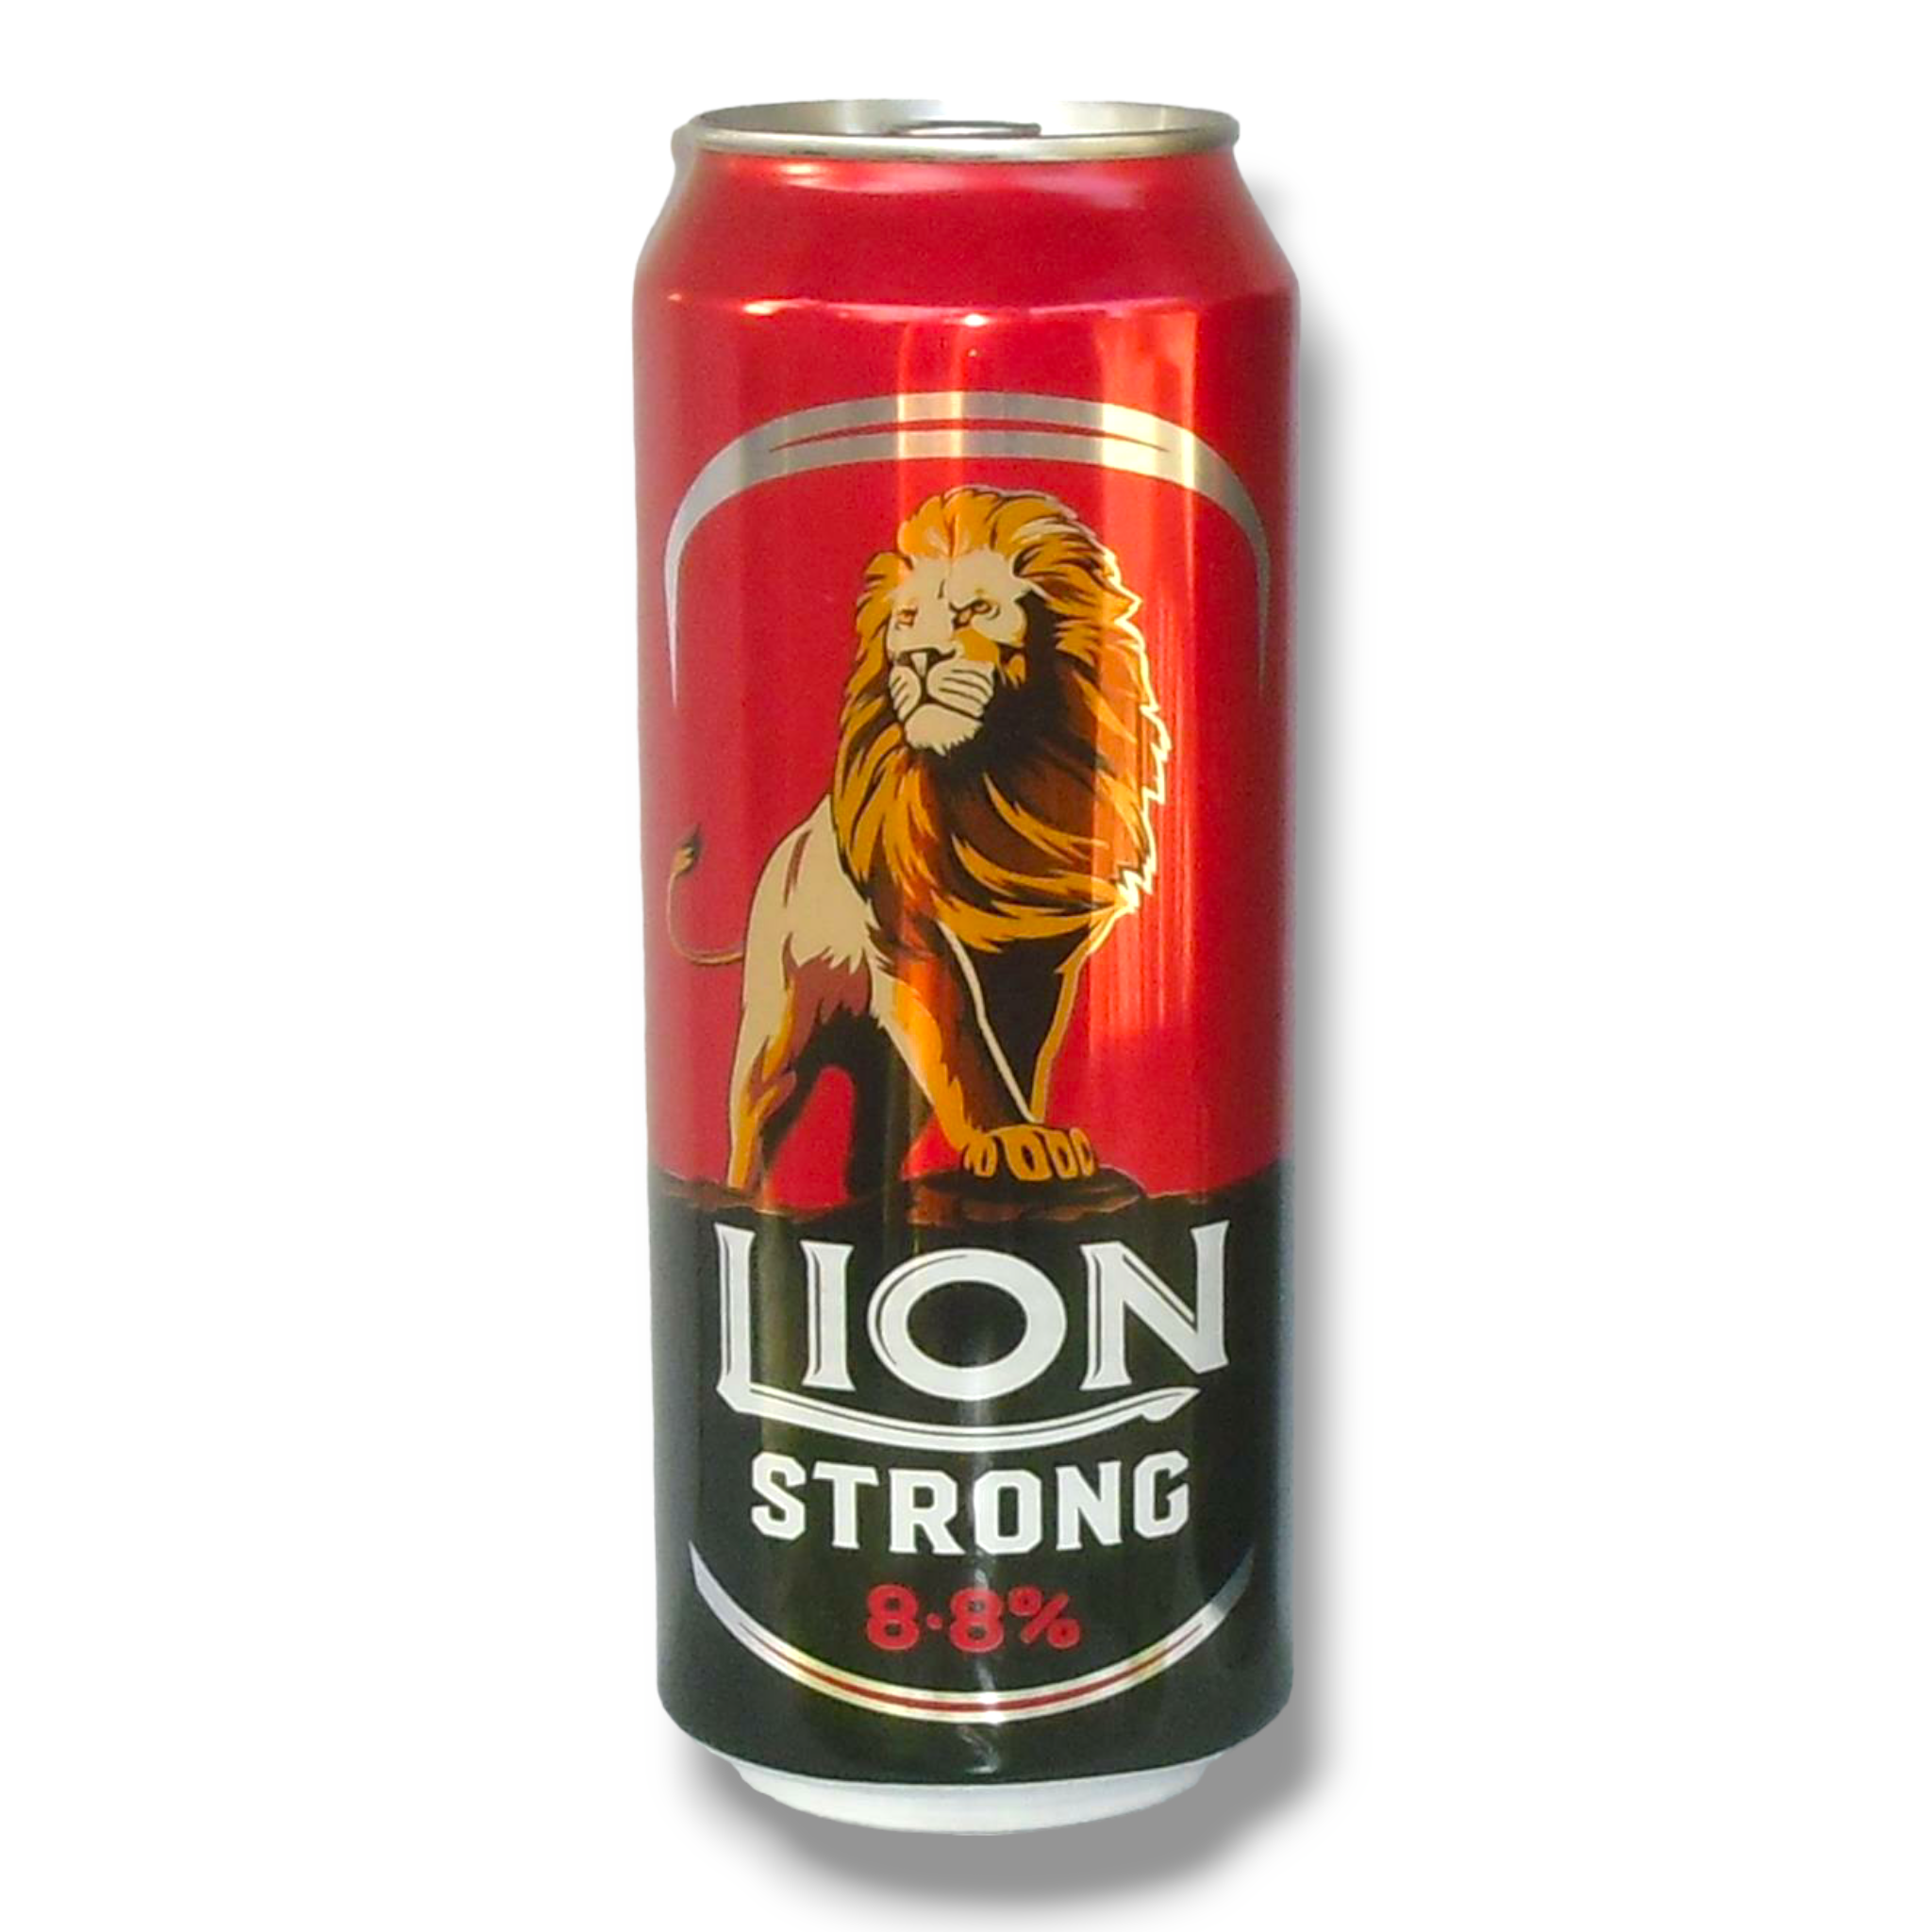 Lion Strong 0,5l- Starkbier aus Sri Lanka mit 8,8% Vol.